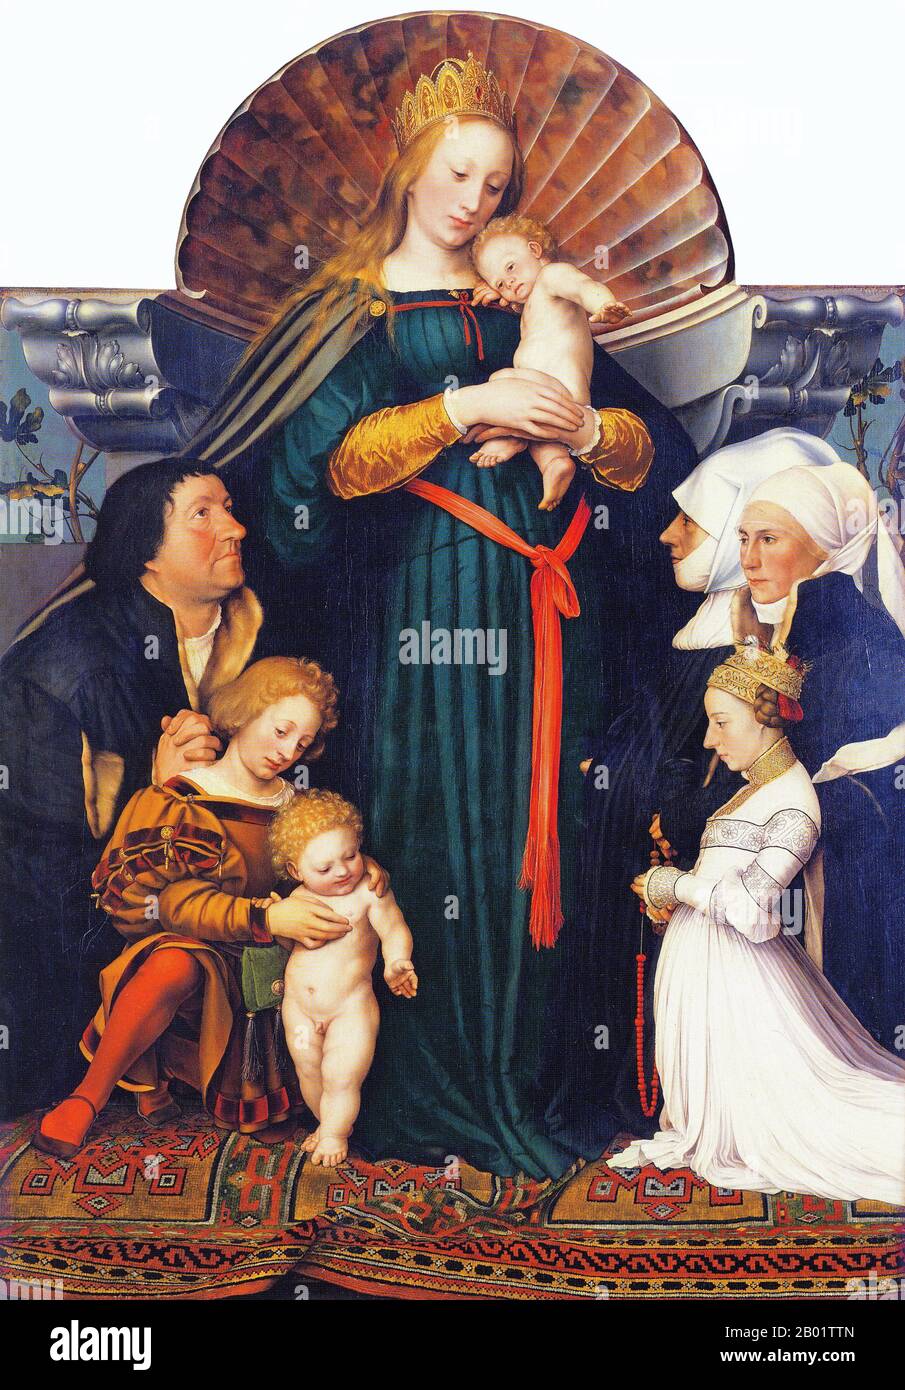 Allemagne : 'Darmstadt Madonna'. Huile sur bois de tilleul peinture de Hans Holbein le jeune (1497-1543), v. 1525. Hans Holbein le jeune était un peintre et graveur germano-suisse du style Renaissance du Nord, considéré par beaucoup comme l'un des plus grands portraitistes du XVIe siècle. Son éventail de travaux comprenait également la propagande réformiste, l'art religieux et la satire, et il a été un contributeur influent à l'histoire de la conception de livres. Il est également peintre du roi d'Henri VIII d'Angleterre, ses portraits de la famille royale et de la noblesse un important document survivant de la cour d'Angleterre. Banque D'Images